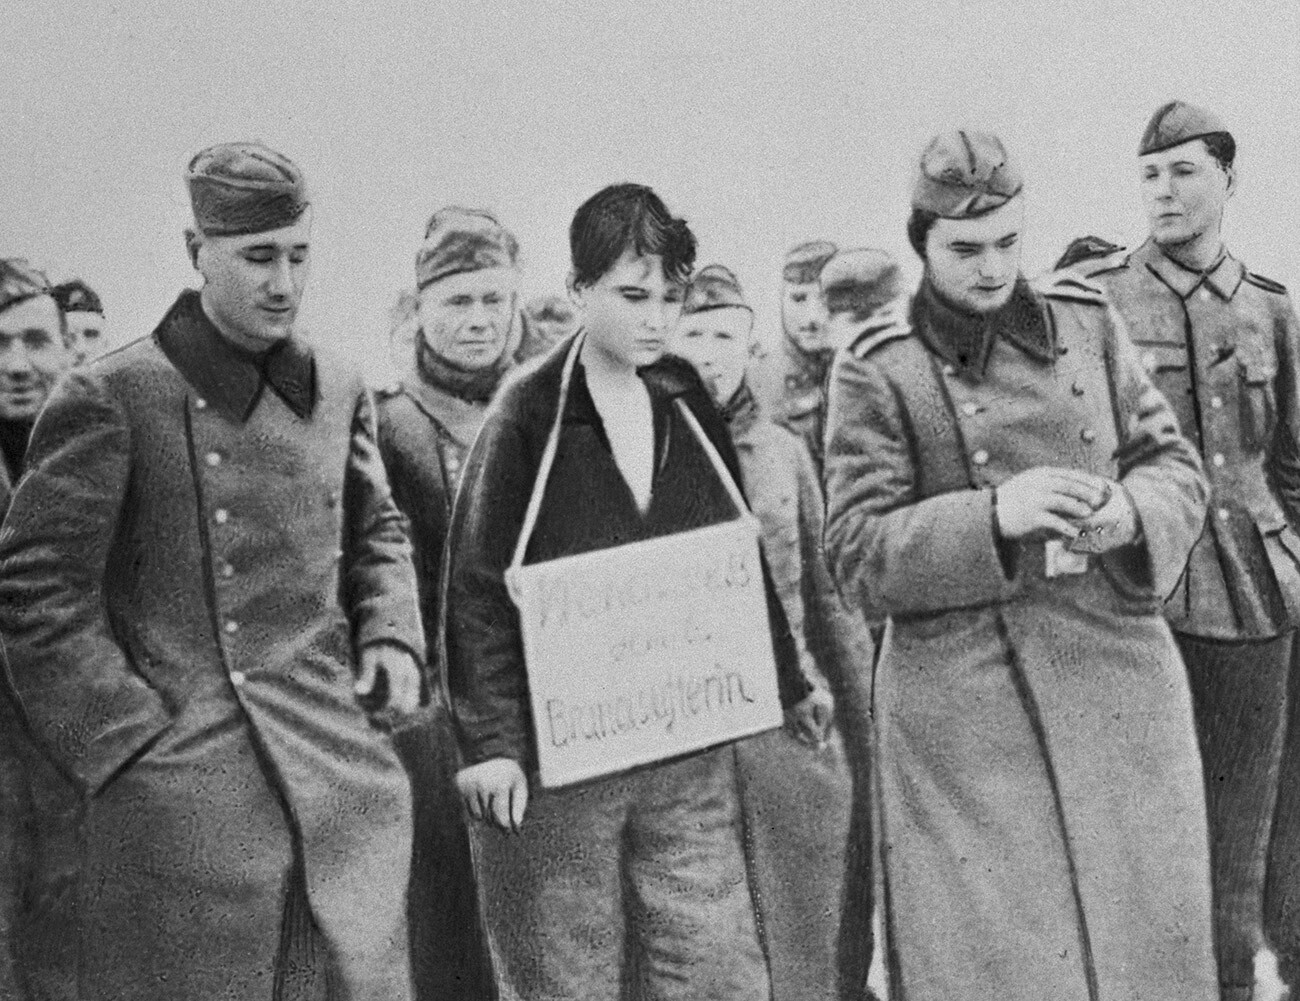 Region Moskau. Die sowjetische Partisanin Soja Kosmodemjanskaja (Mitte), die von den Nazis gefangen genommen wurde, vor ihrer Hinrichtung im Dorf Petrischchewo während des Großen Vaterländischen Krieges. Reproduktion eines aufgenommenen Fotos.